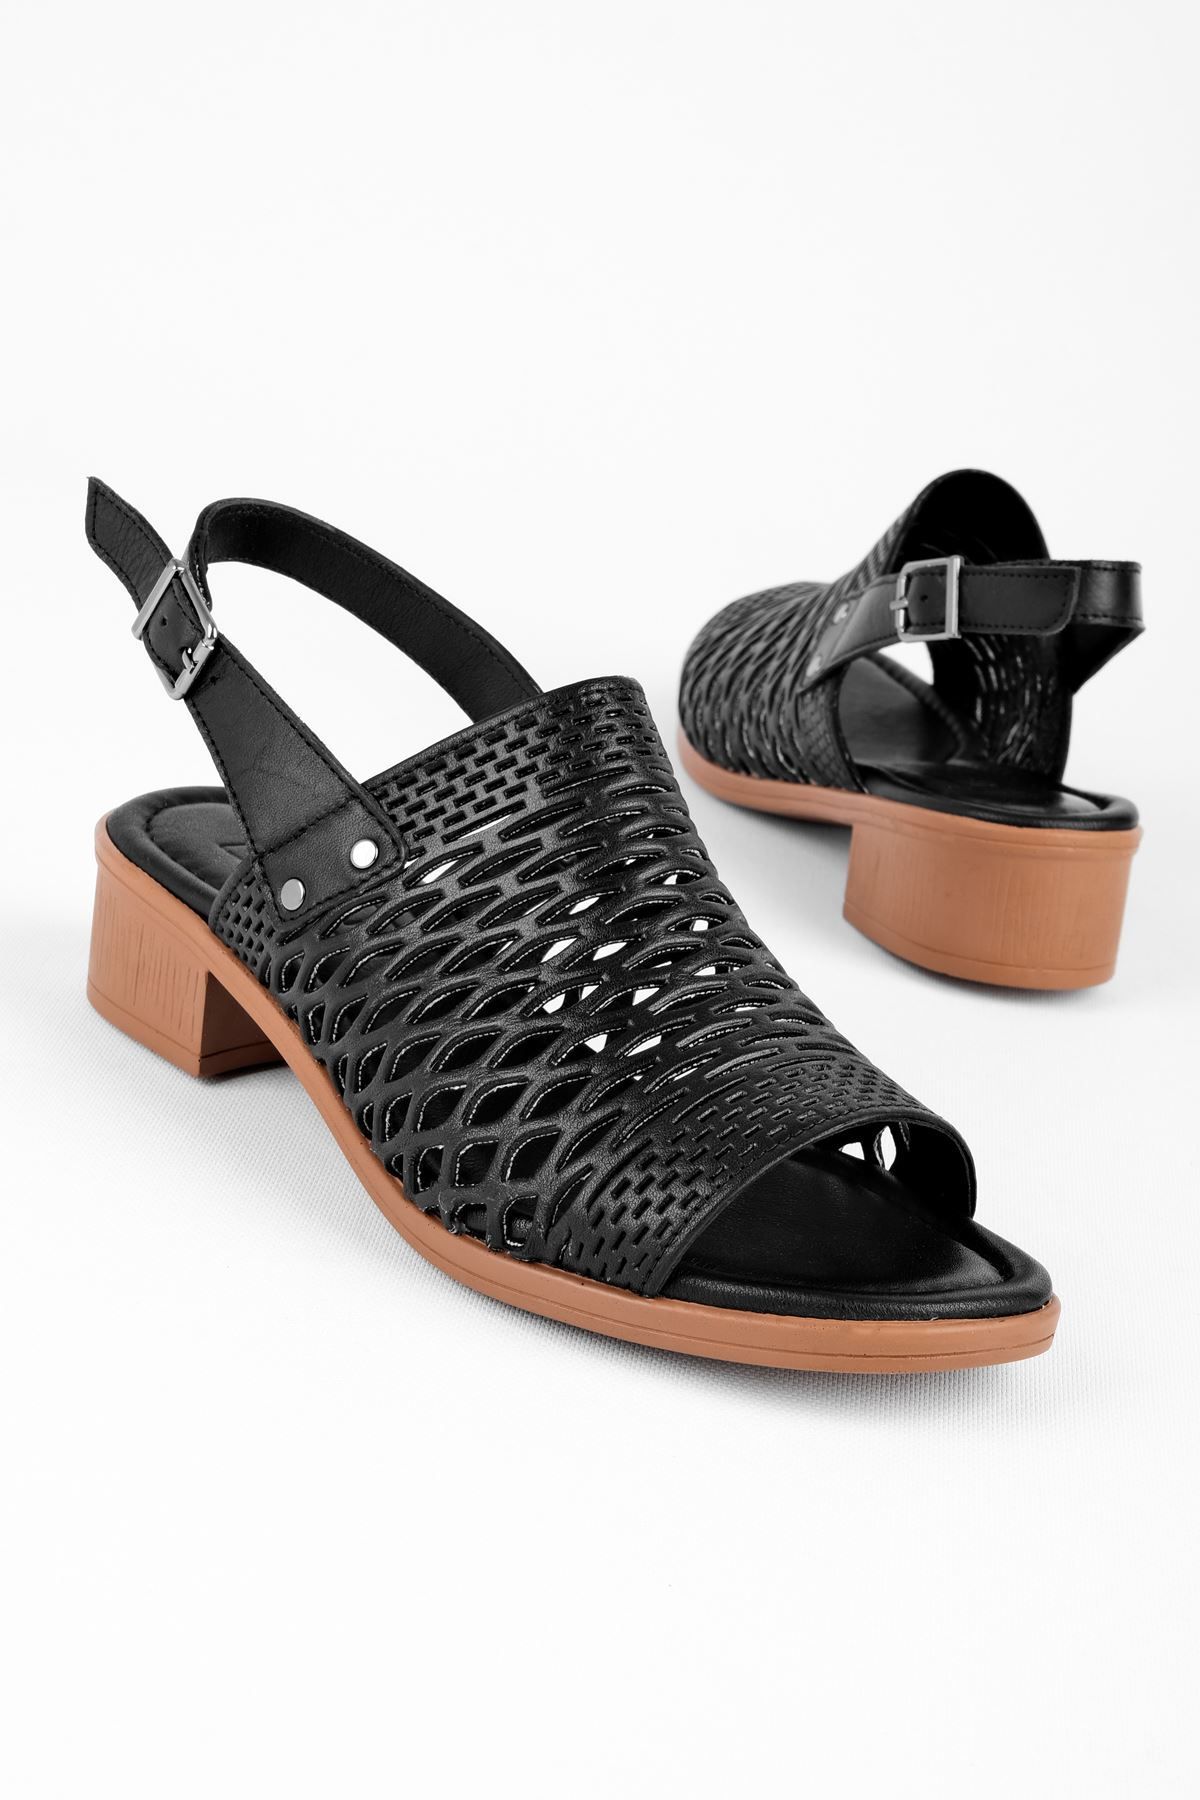 LAL SHOES & BAGS Ressie Kadın Hakiki Deri Deli Detaylı Arkası Açık Topuklu Ayakkabı-siyah